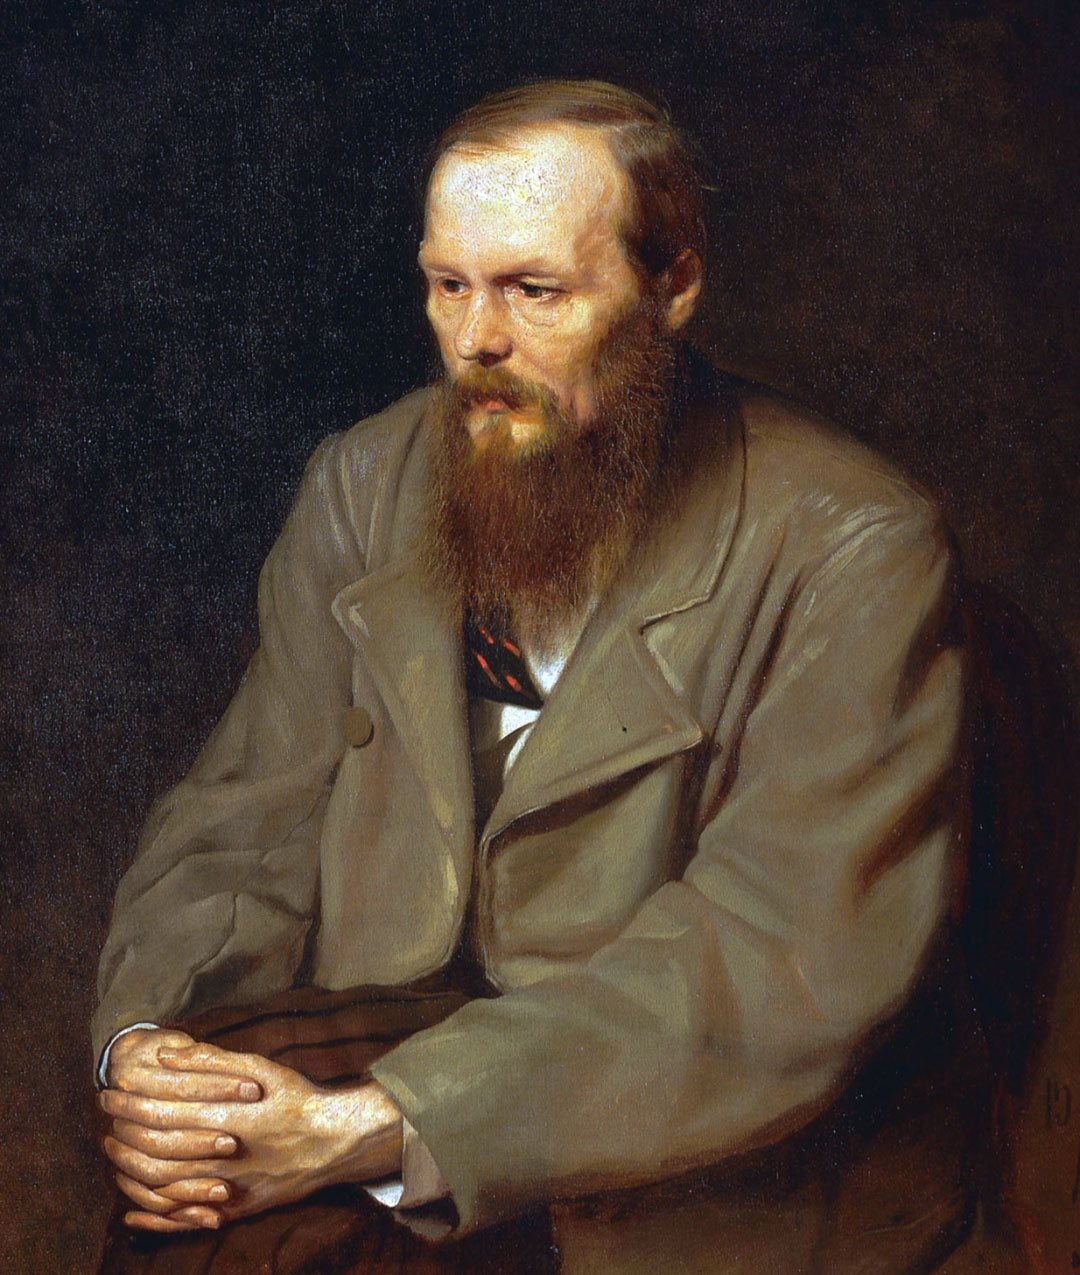  Fyodor Dostoyevski, biyografi: tarihçe, hayatı ve eserleri